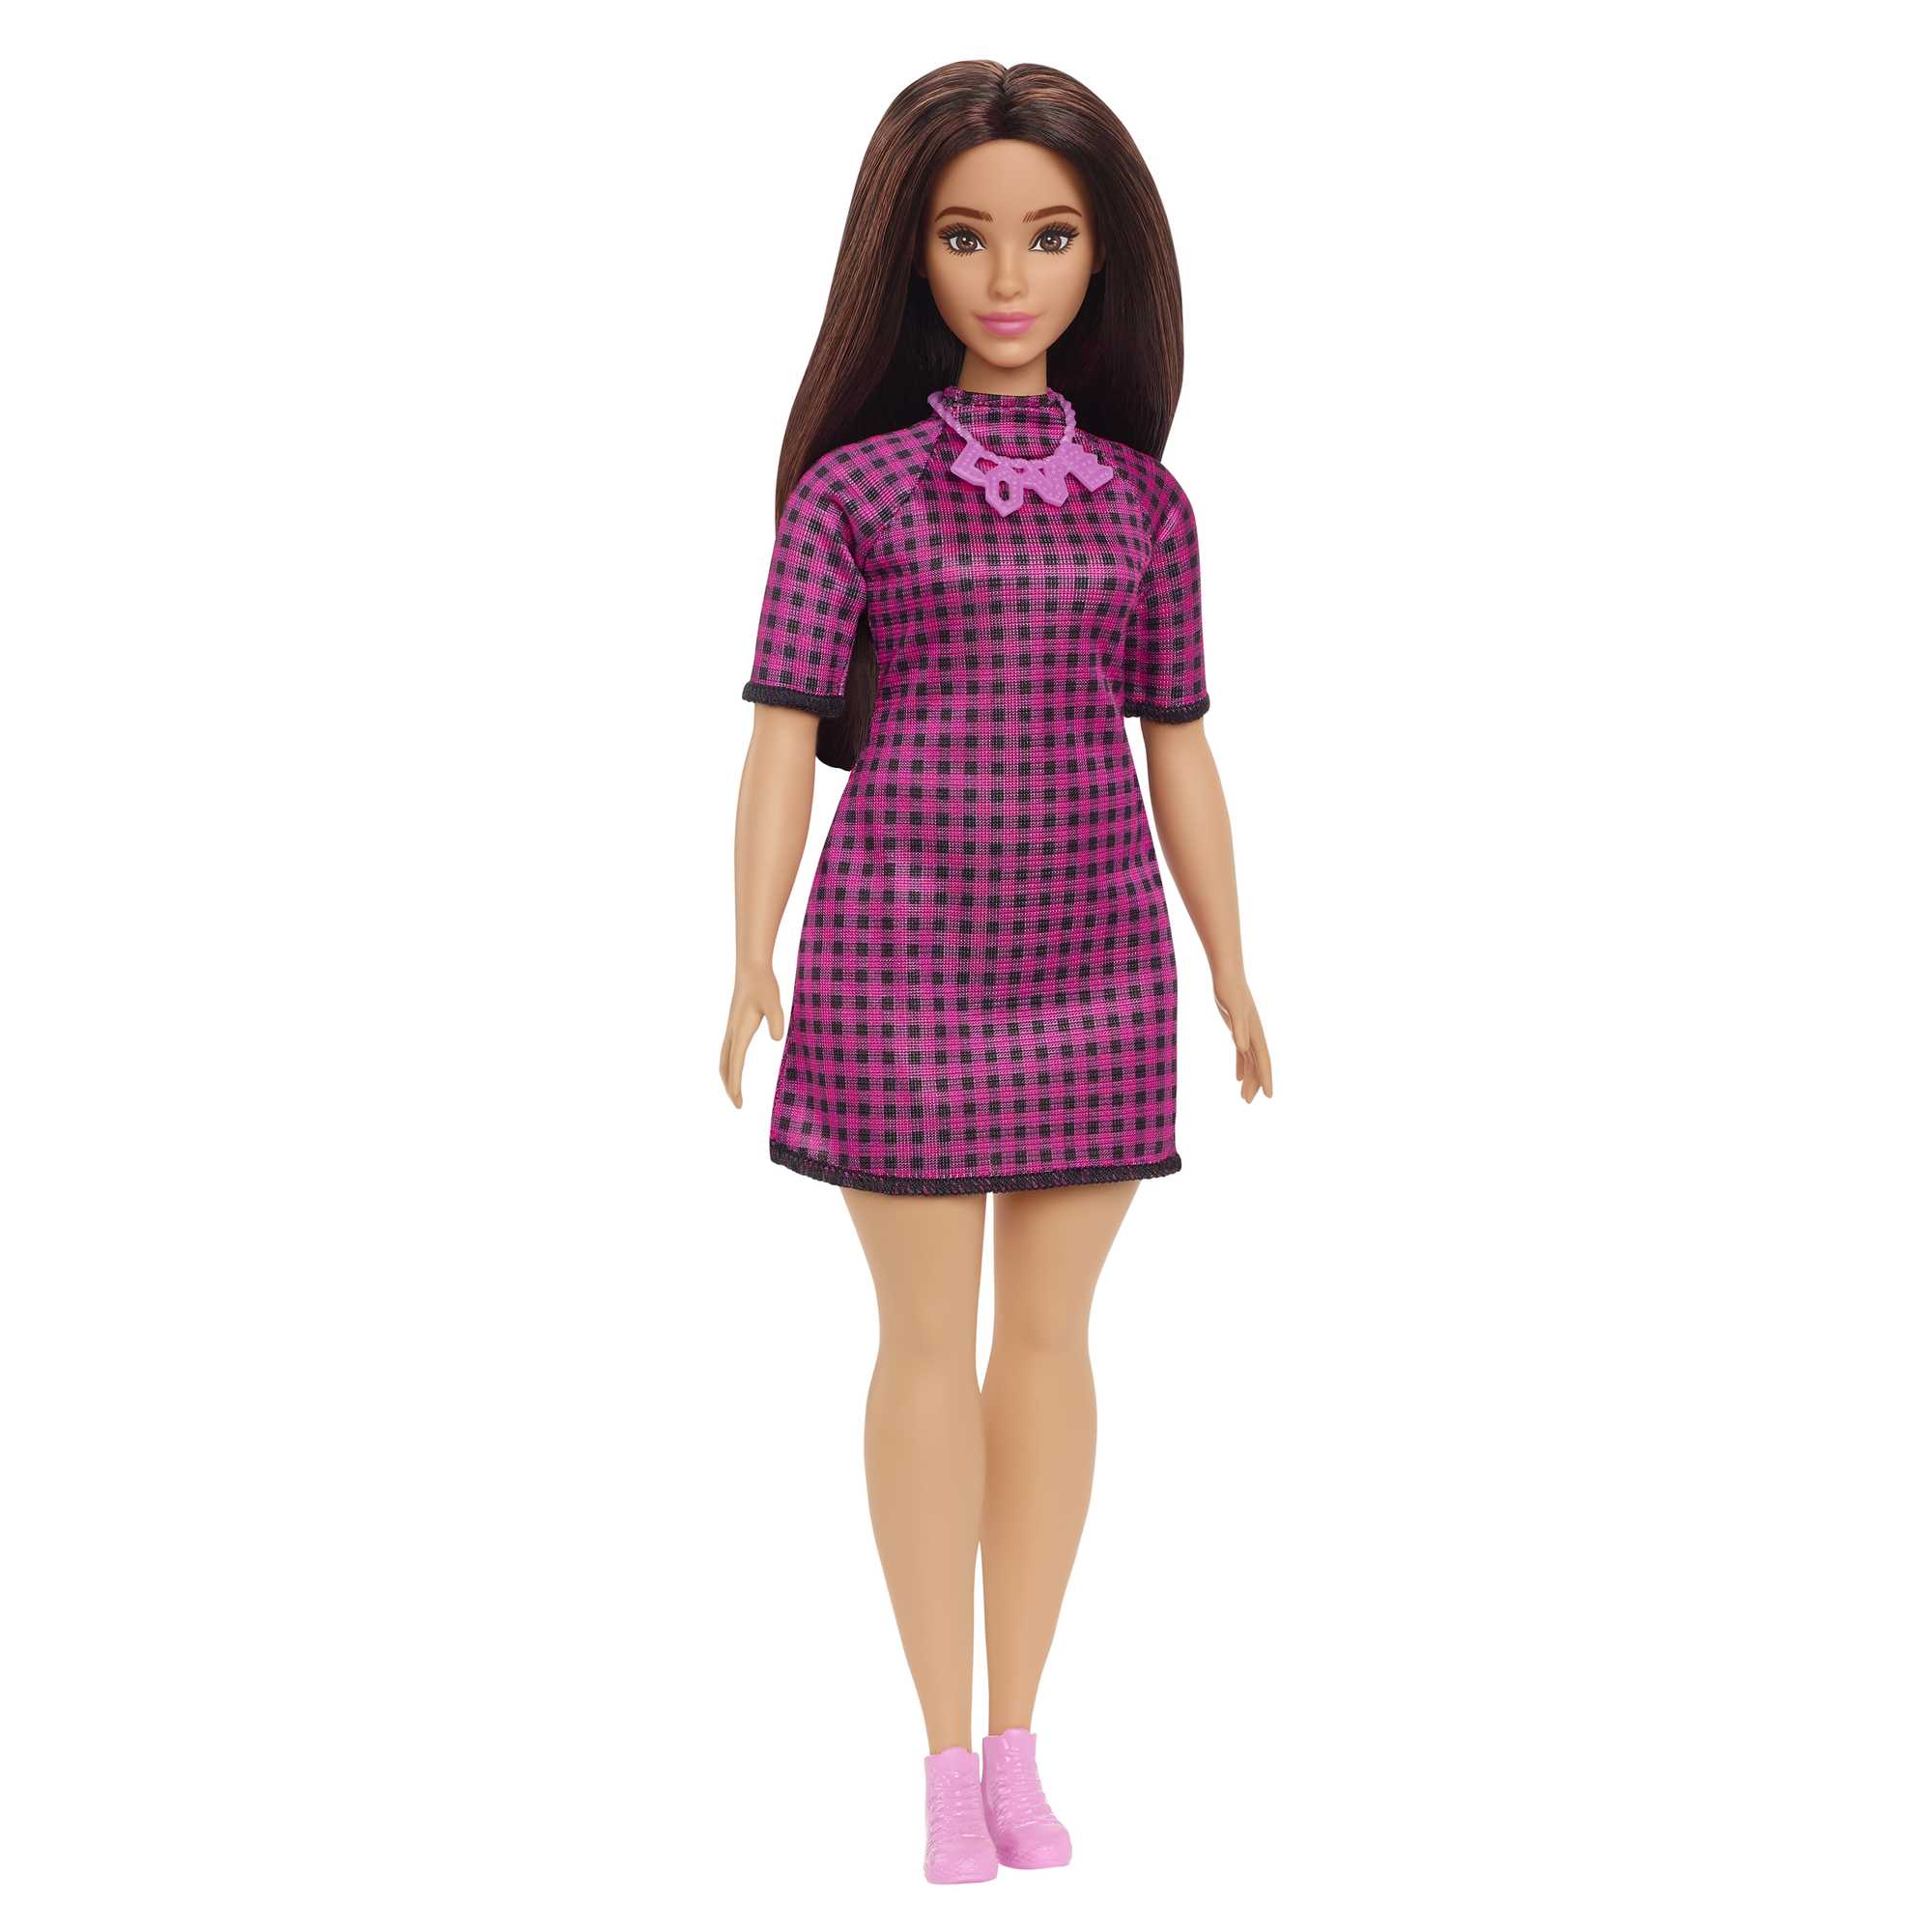 Кукла Mattel Barbie с длинными волосами брюнетка HBV20